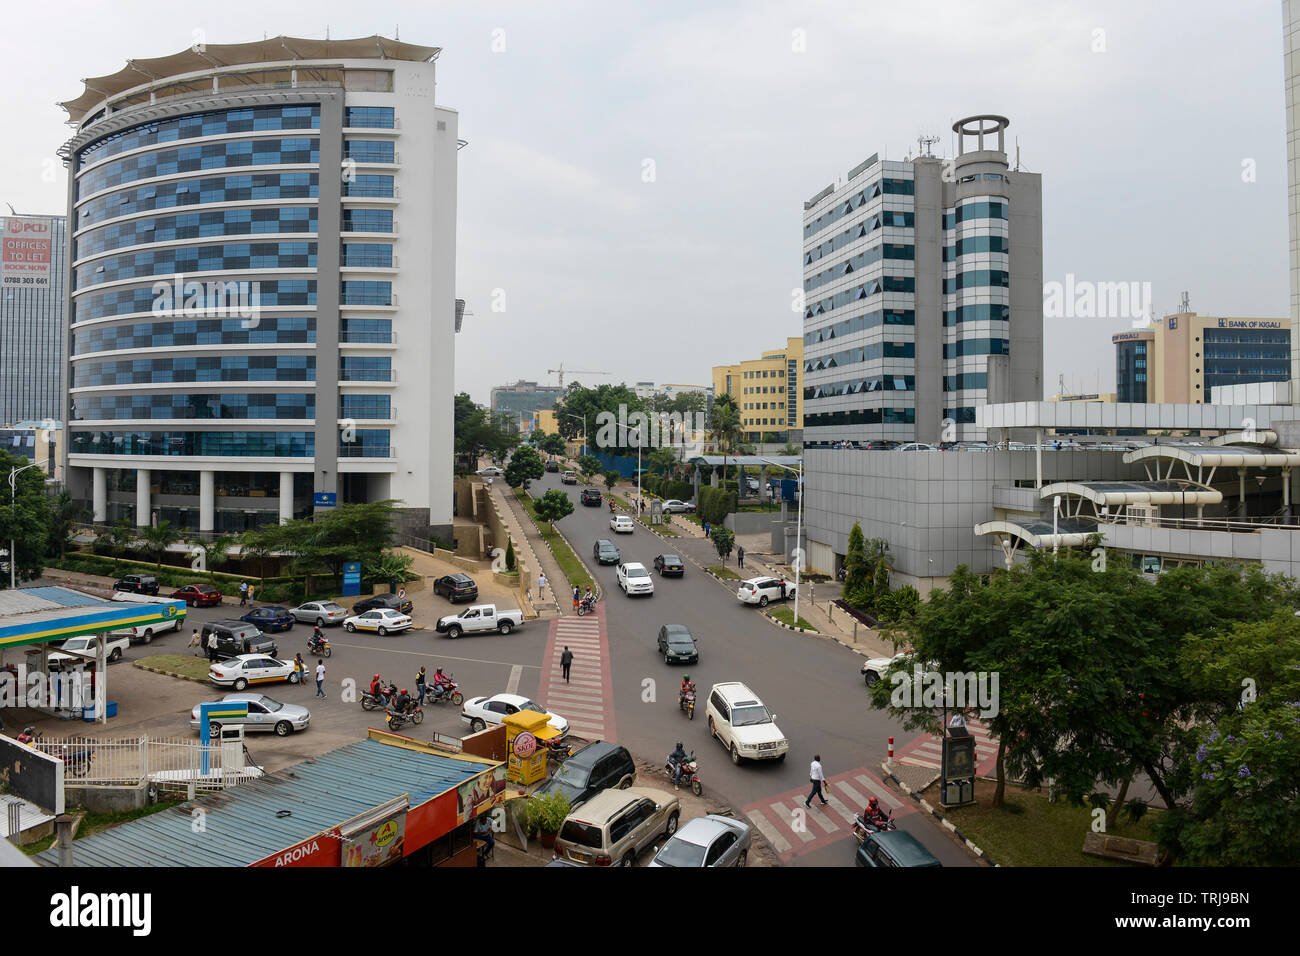 Ruanda, Kigali, Innenstadt mit Banken und Versicherungen/Ruanda, Kigali, Alpine, Banken Buero und Versicherungstower Stockfoto